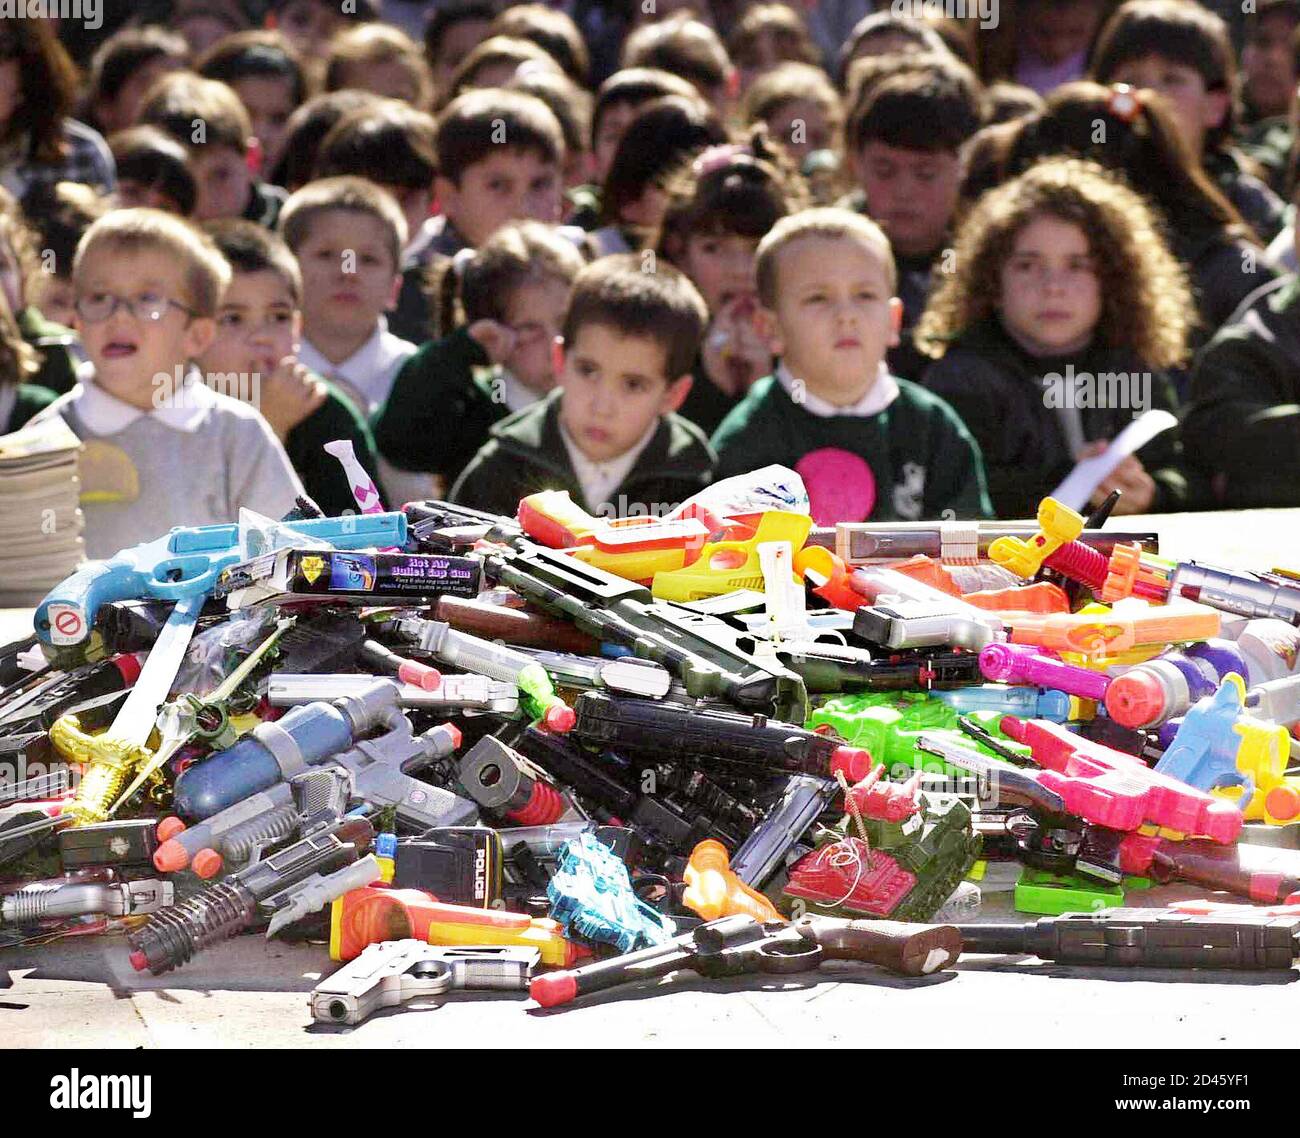 Decenas de niños guarderías argentinos se sientan frente a la pila de armas de juguete que entregaron a cambio de suministros escolares y juguetes educativos en la plaza de la